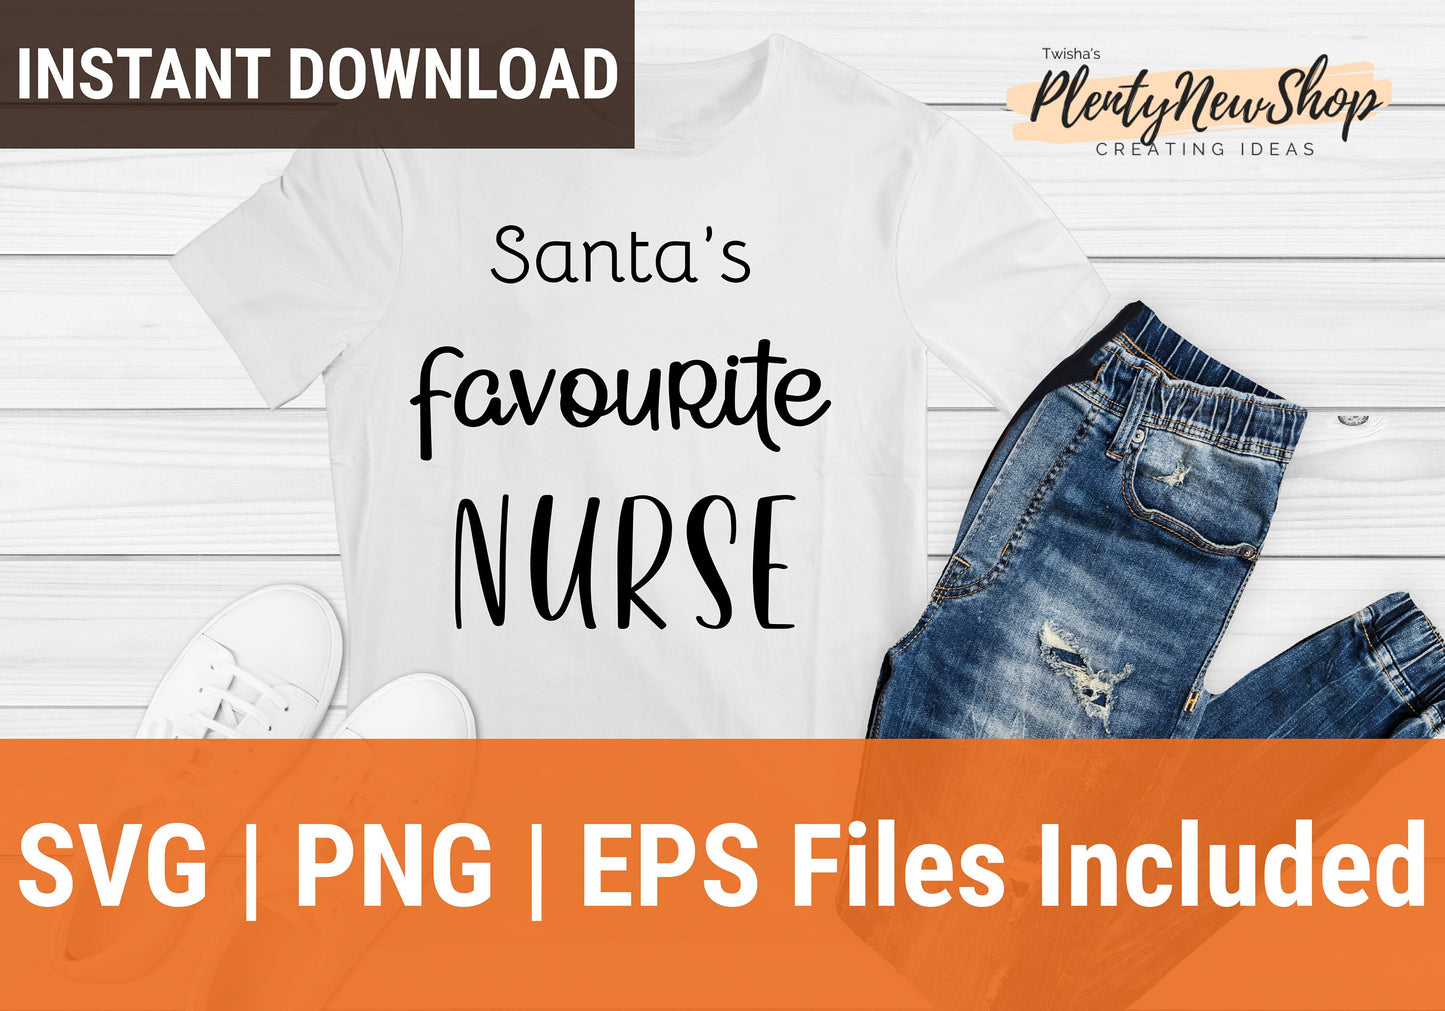 Santa's Favorite Nurse SVG